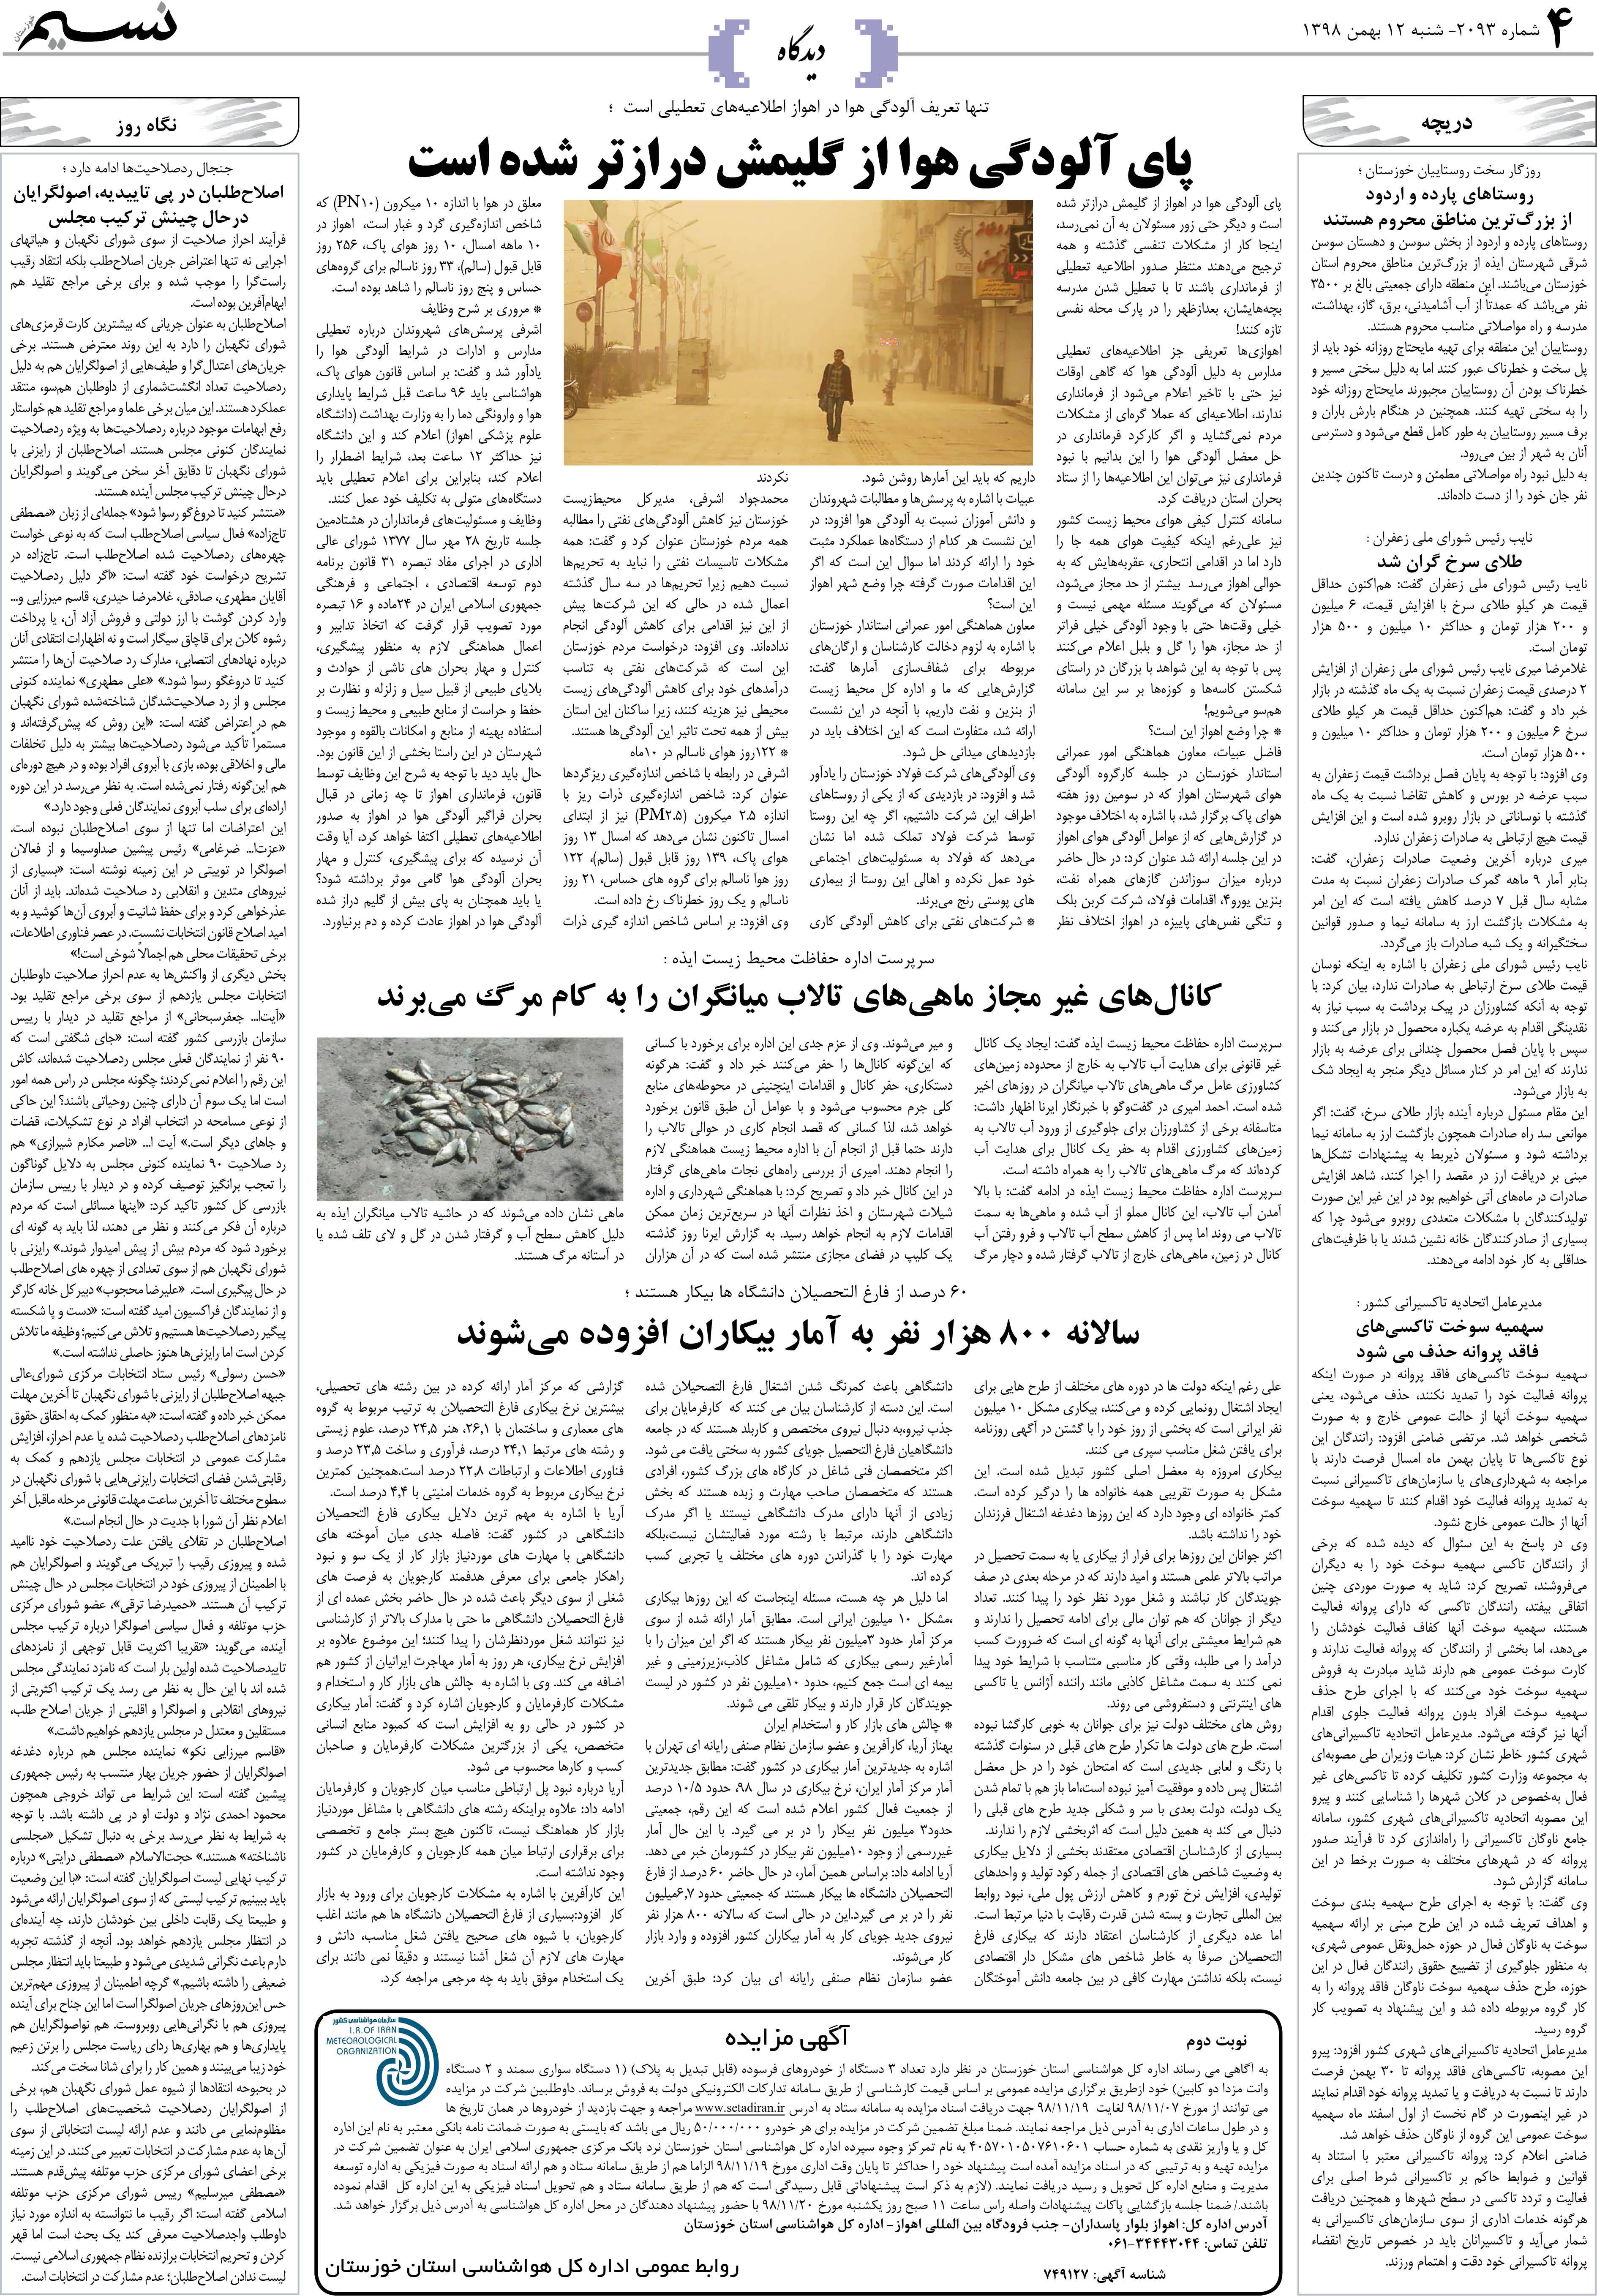 صفحه دیدگاه روزنامه نسیم شماره 2093